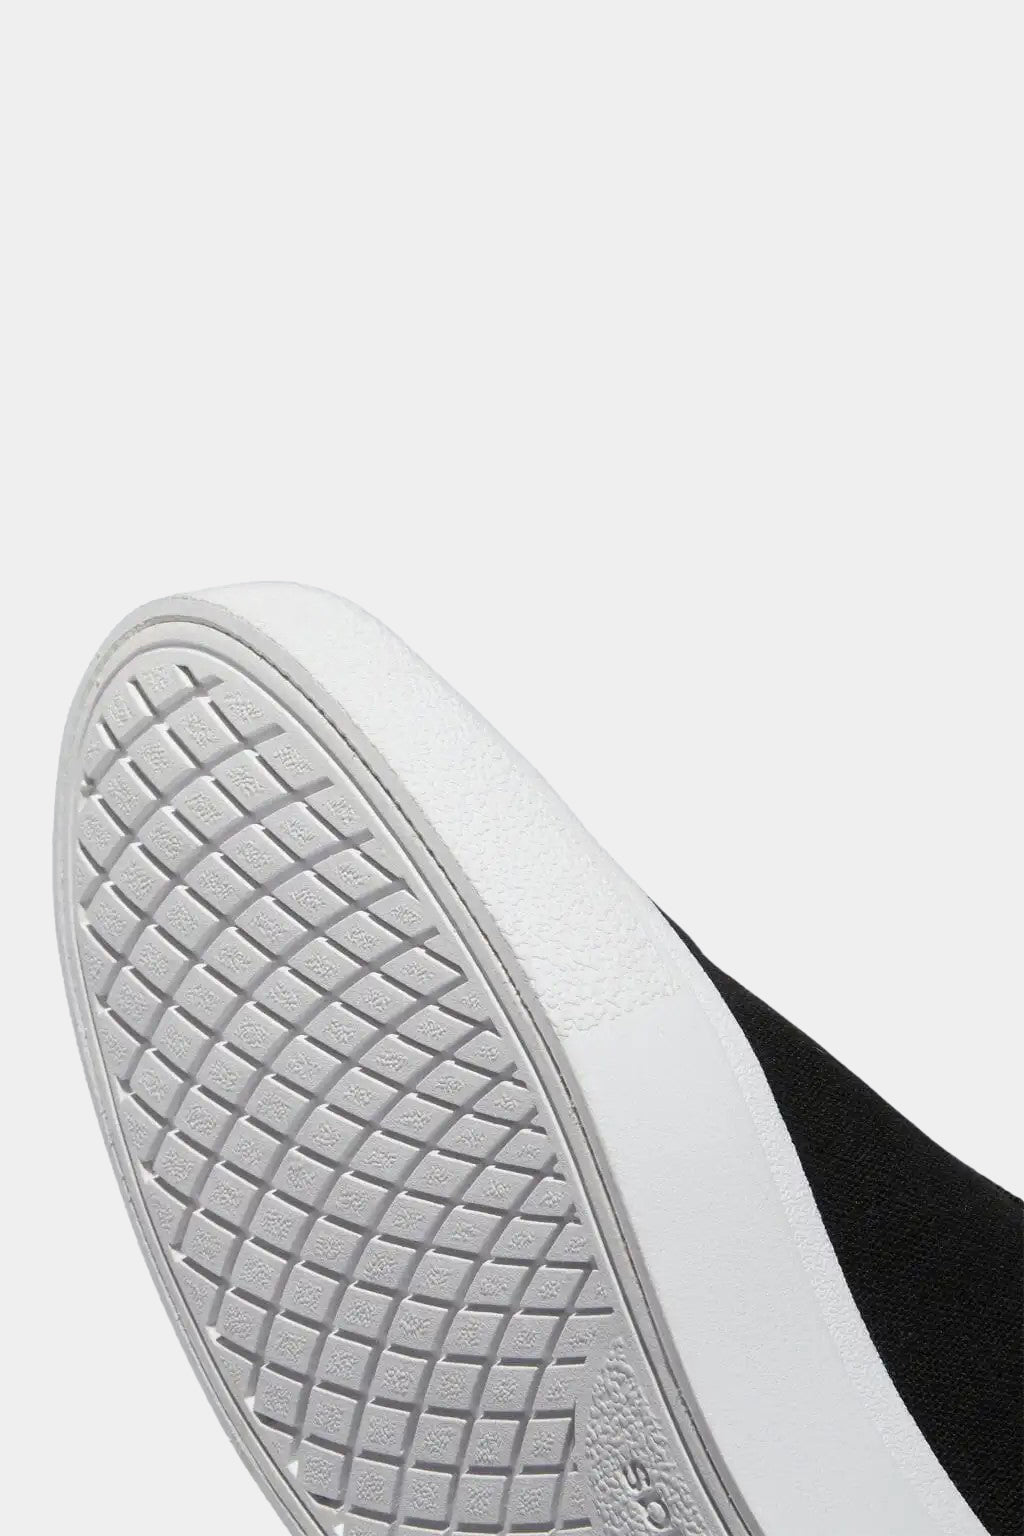 Adidas - Vulc Raid3r Skateboarding Shoes